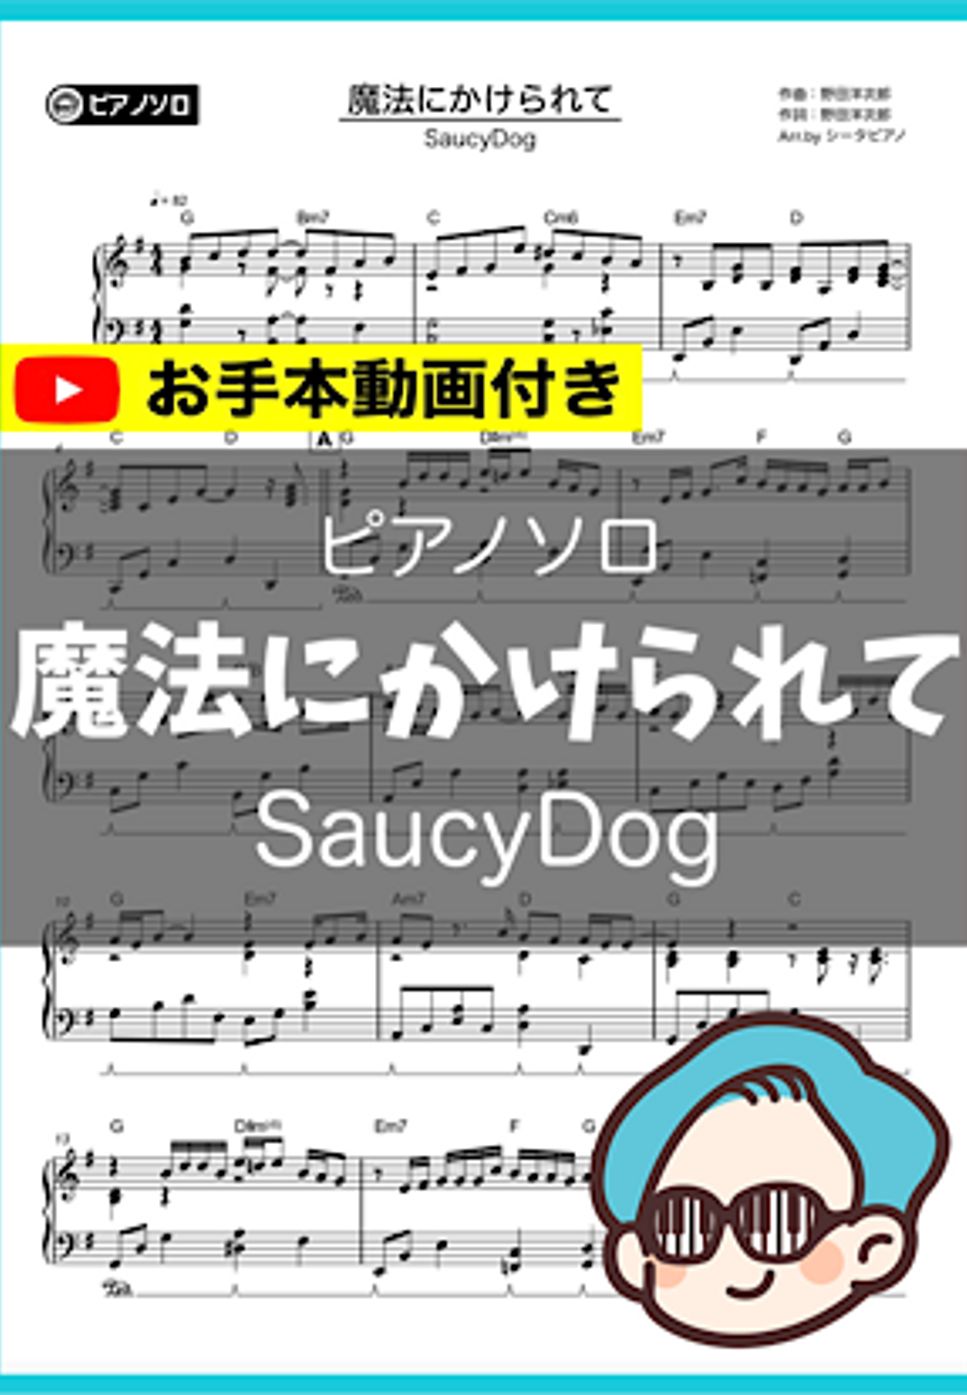 SaucyDog - 魔法にかけられて by シータピアノ